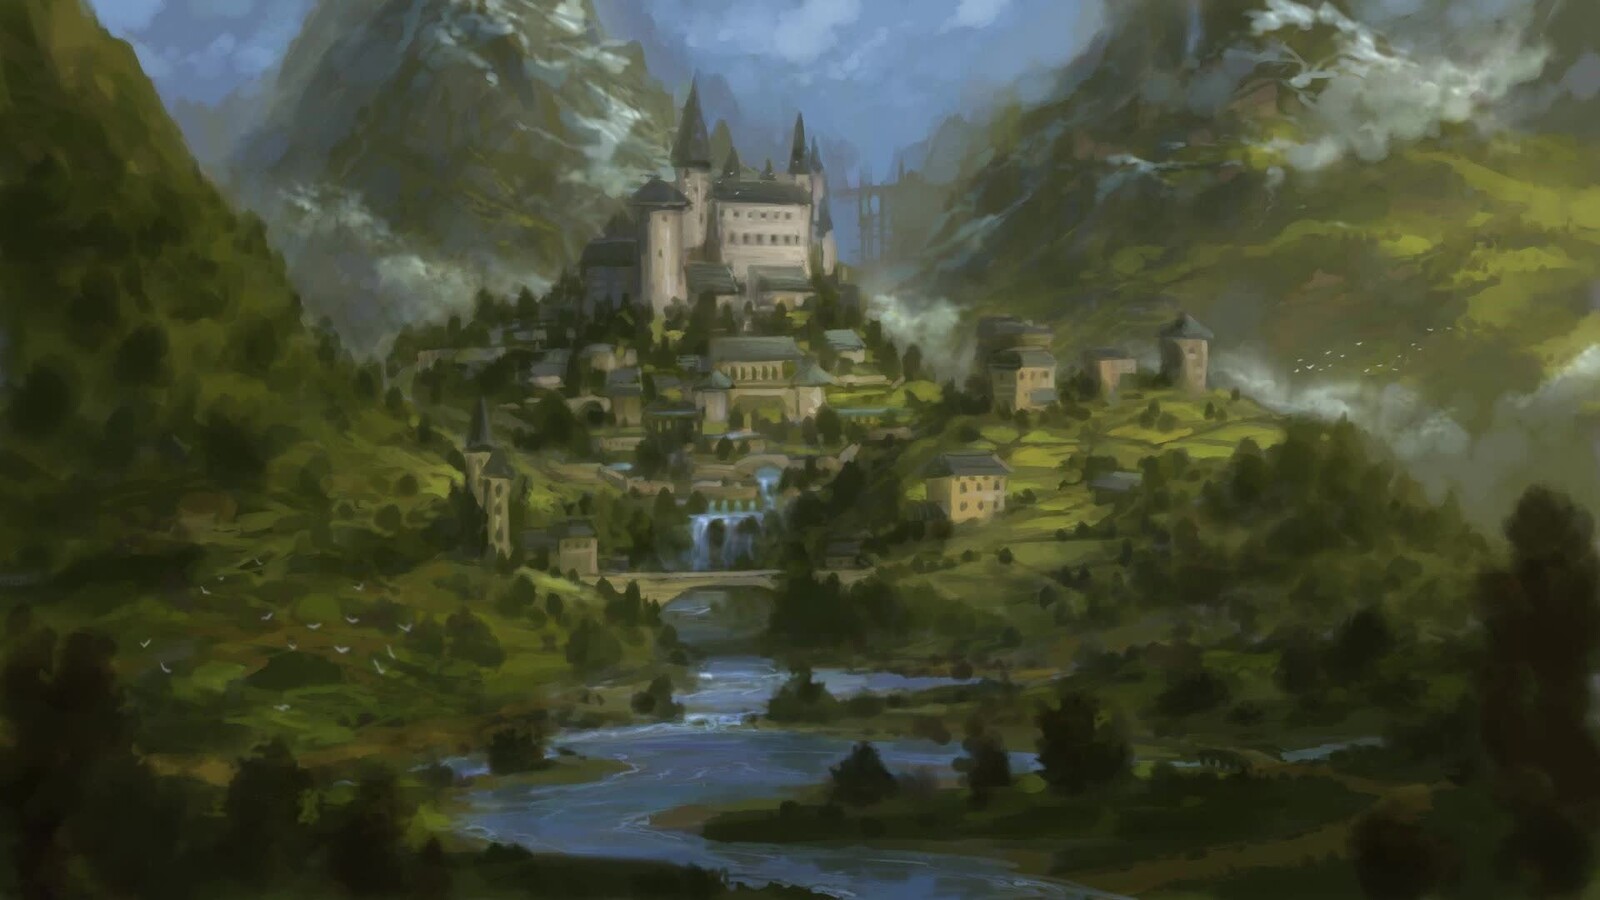 Fantasy Castle - sketch